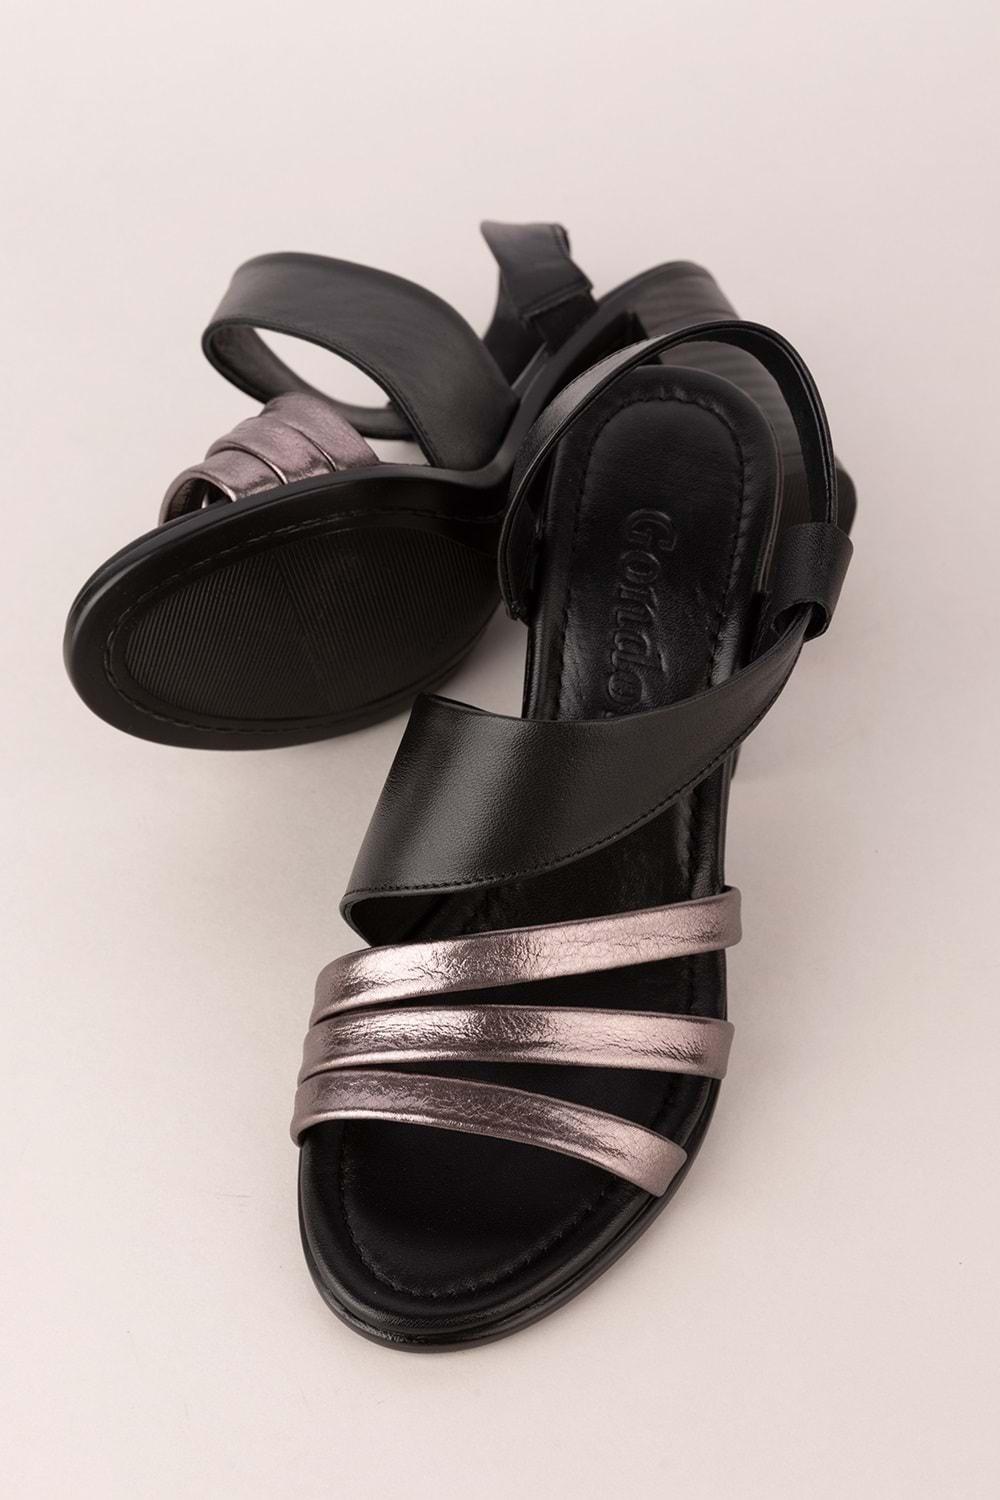 Gondol Kadın Hakiki Deri Topuklu Şık Ayakkabı tlh.603 - Siyah Platin - 40